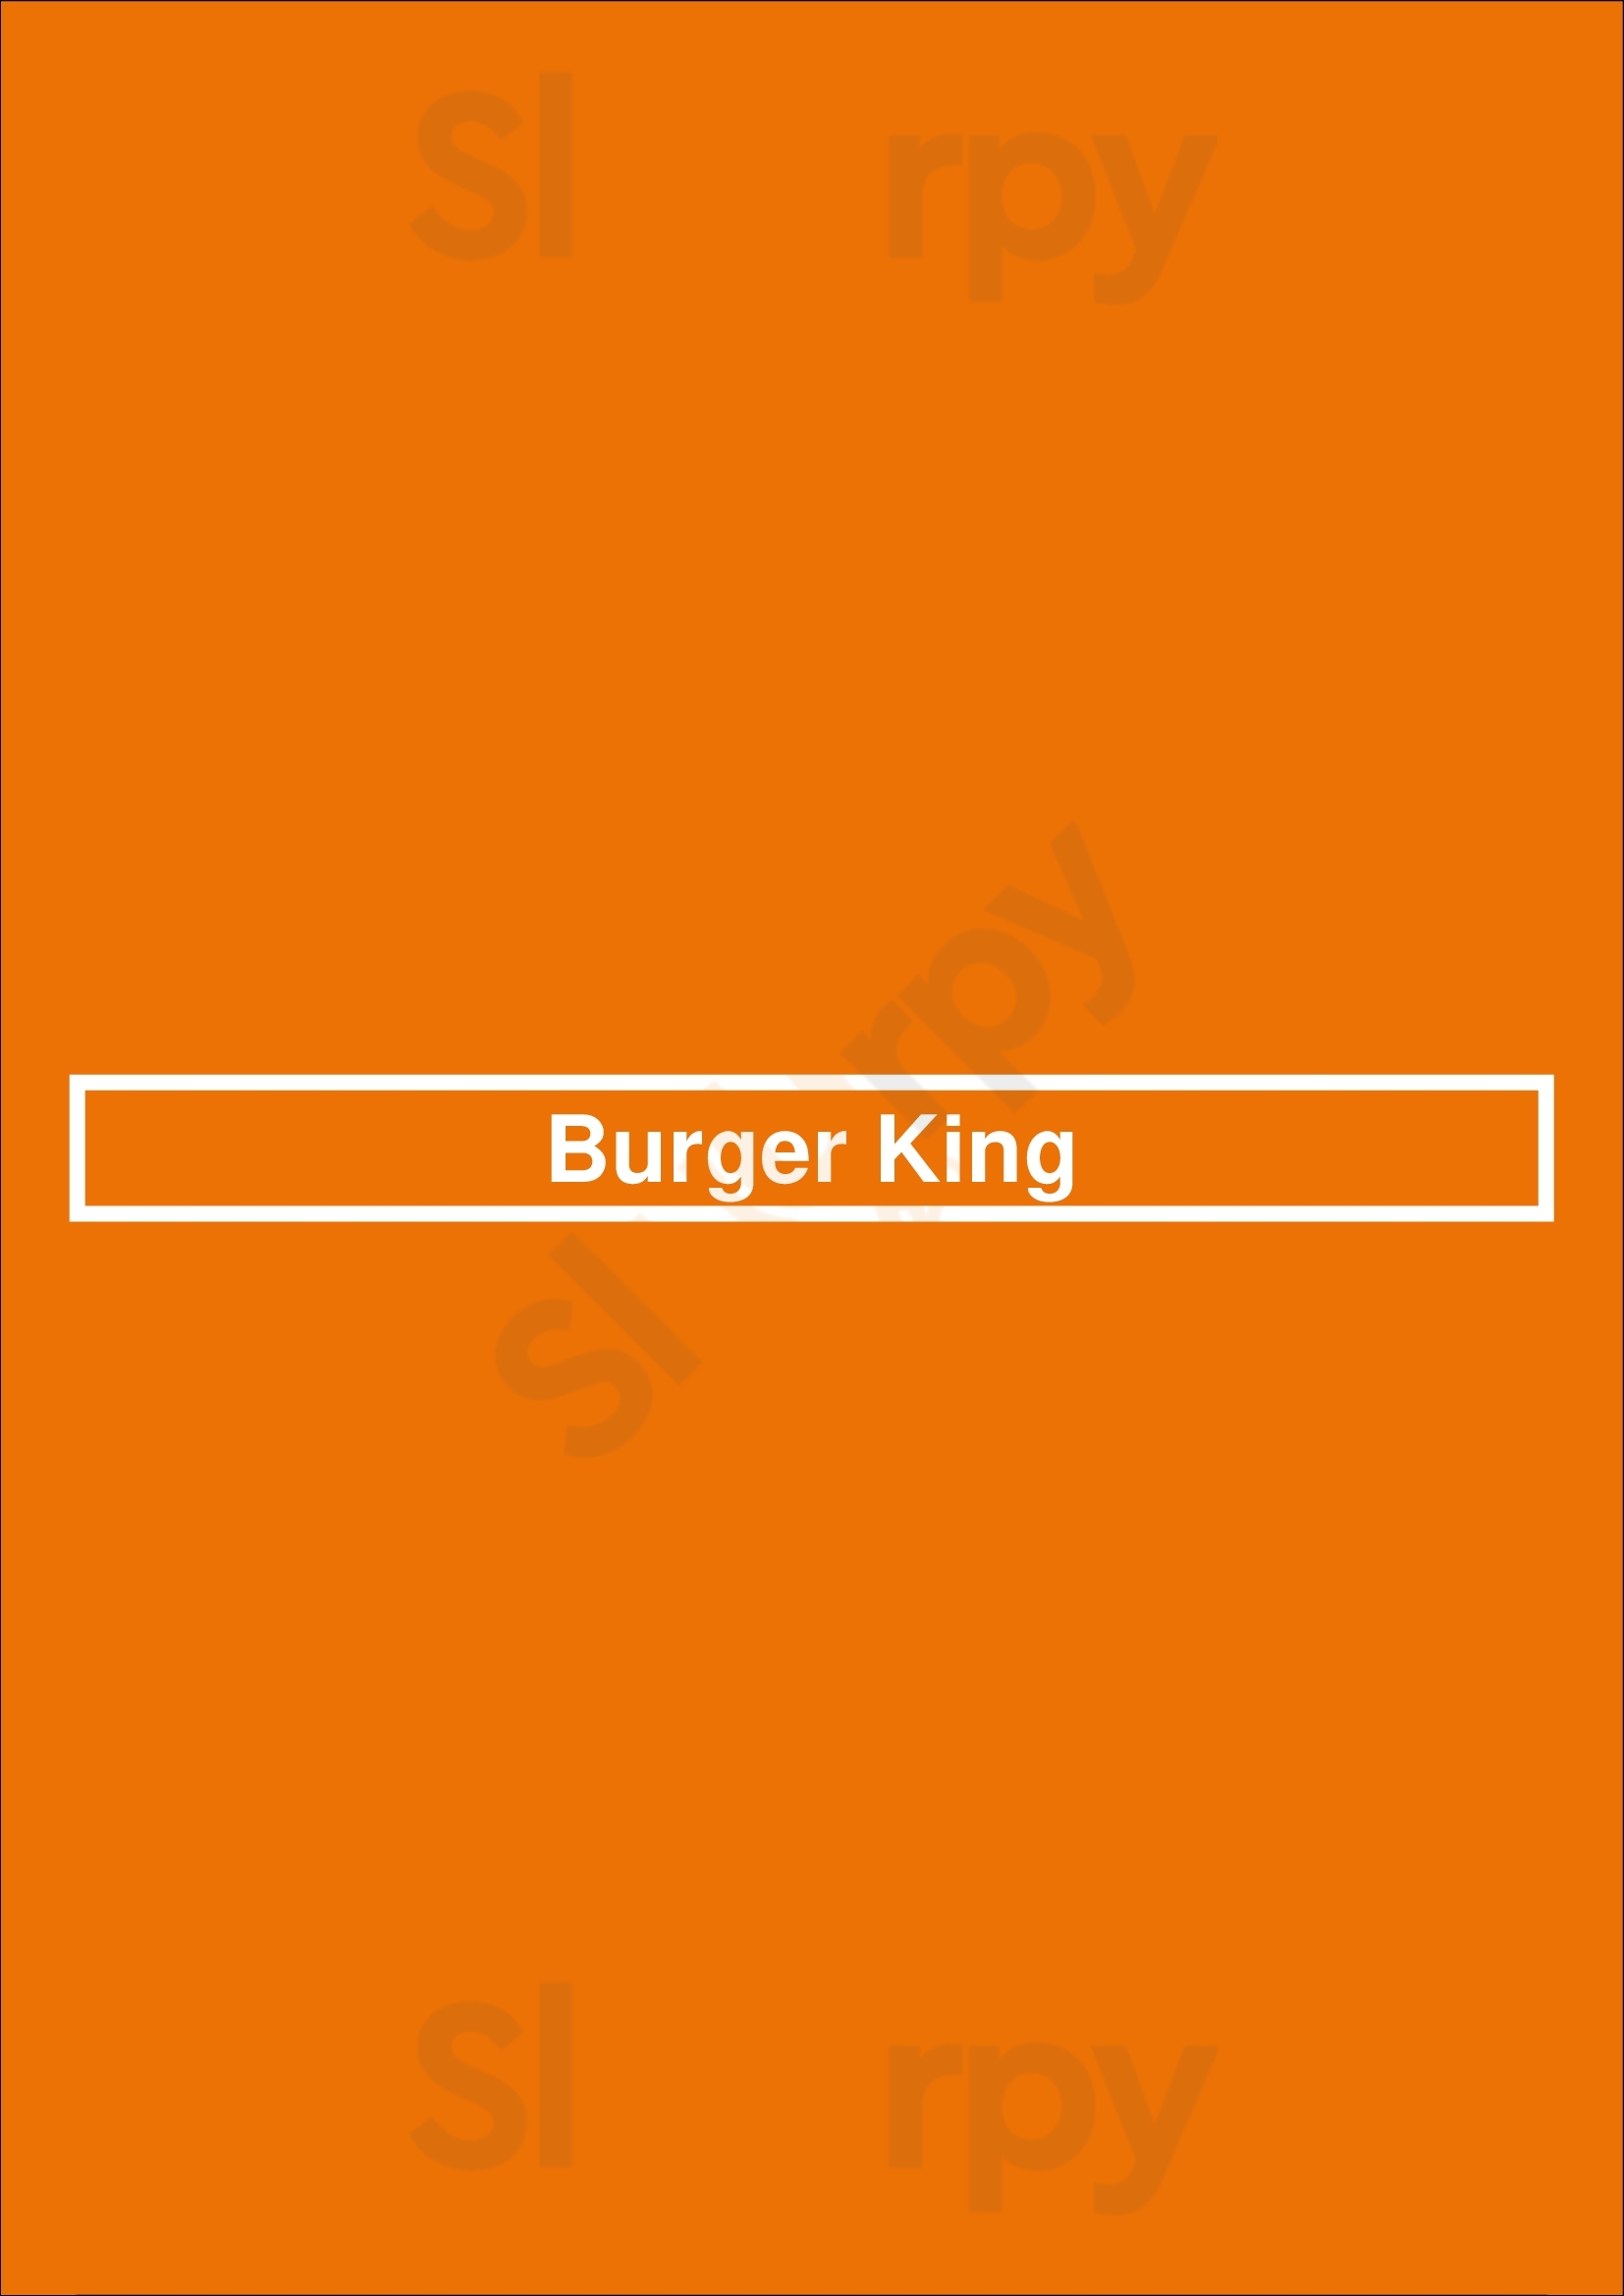 Burger King Billings Menu - 1